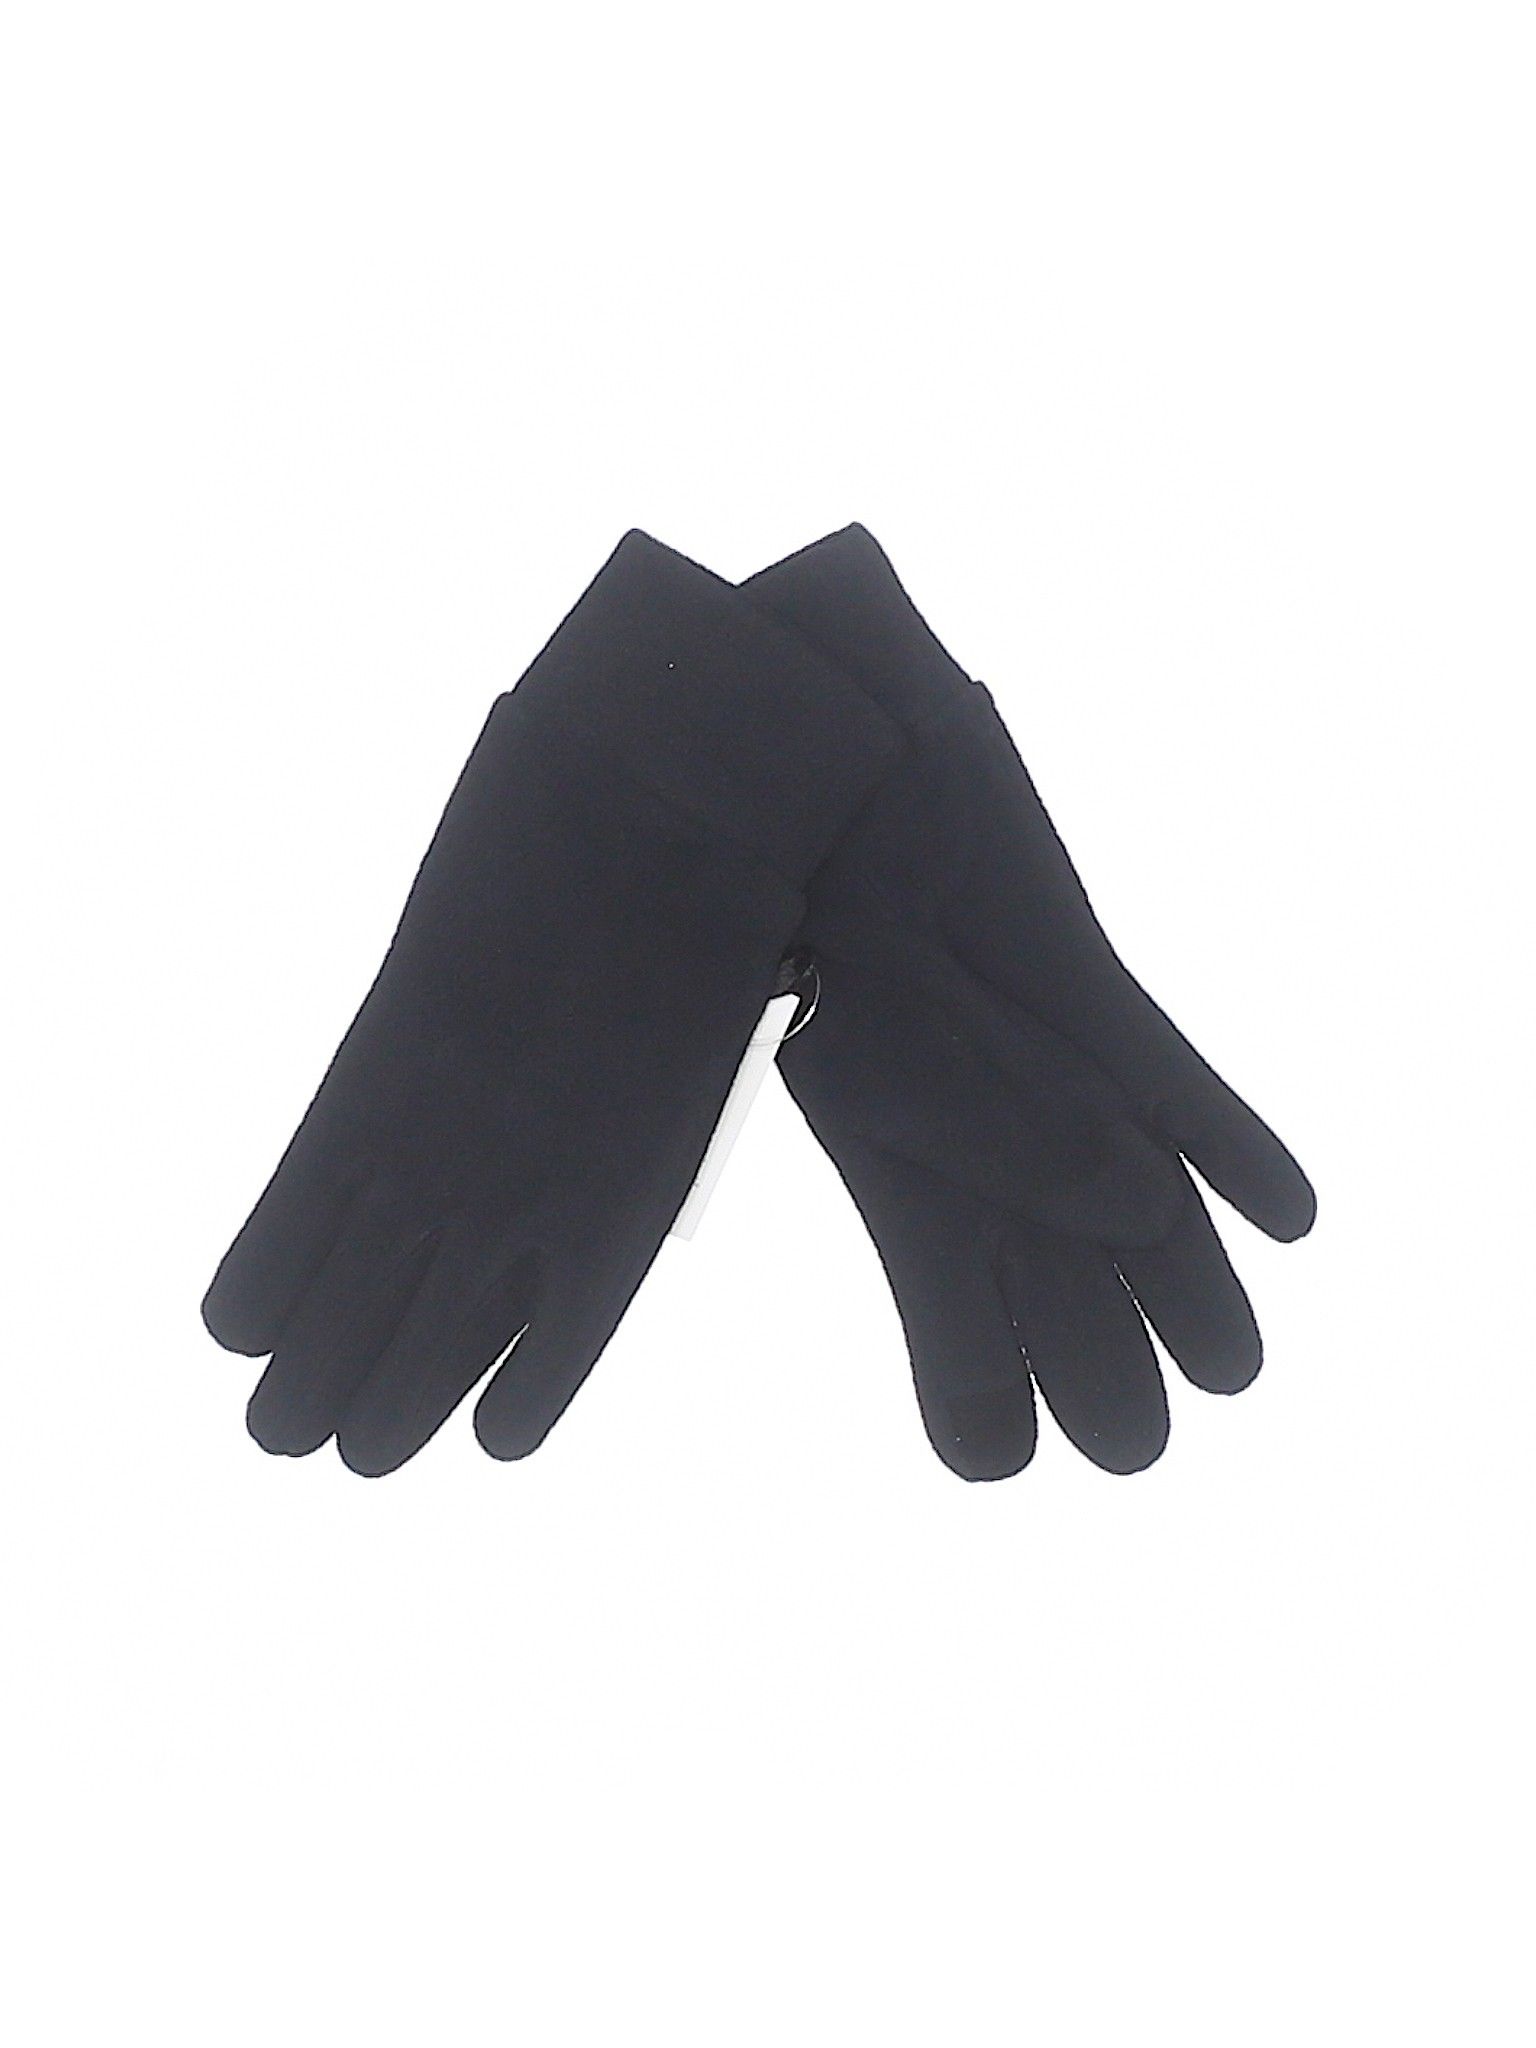 Lands' End Gloves Size 8: Black Women's Accessories - 46842659 | thredUP